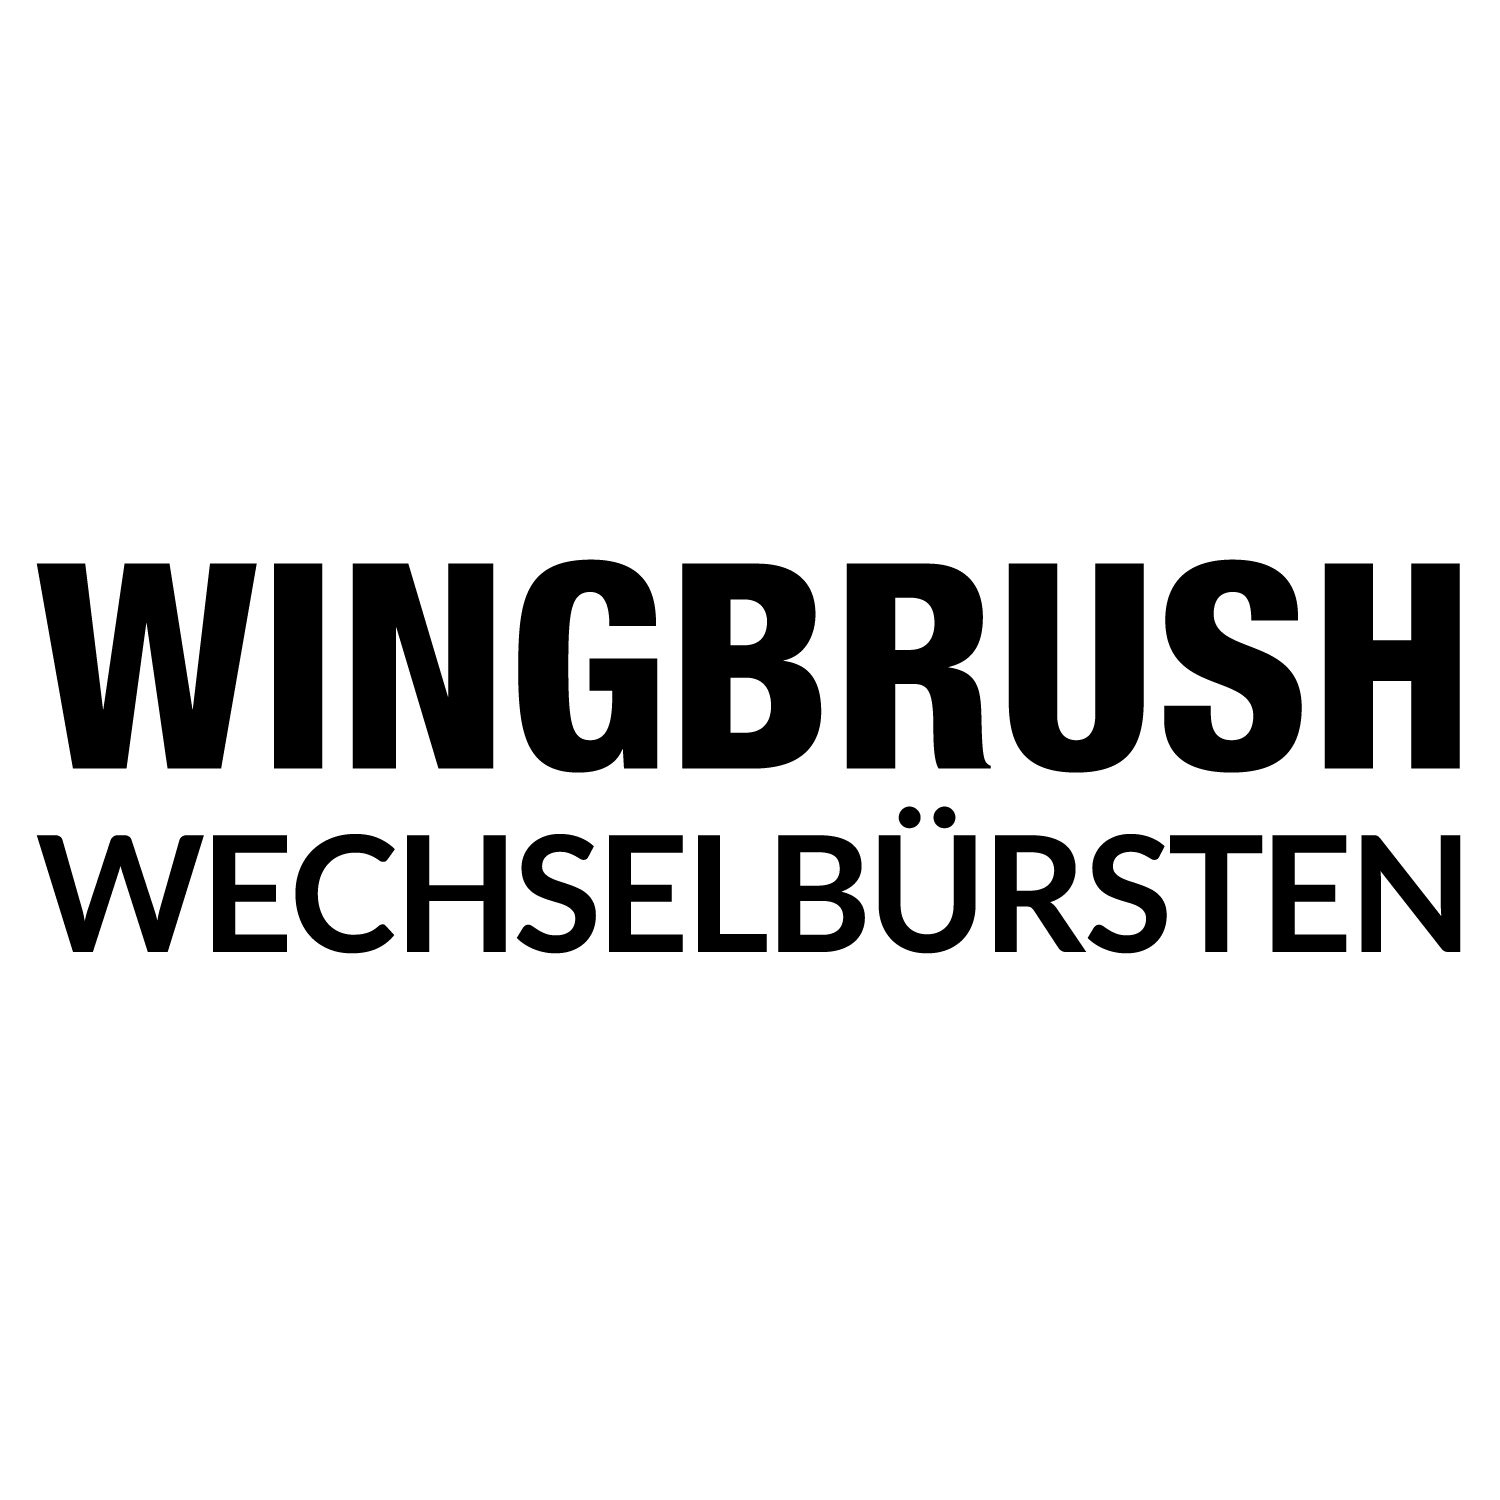 WINGBRUSH